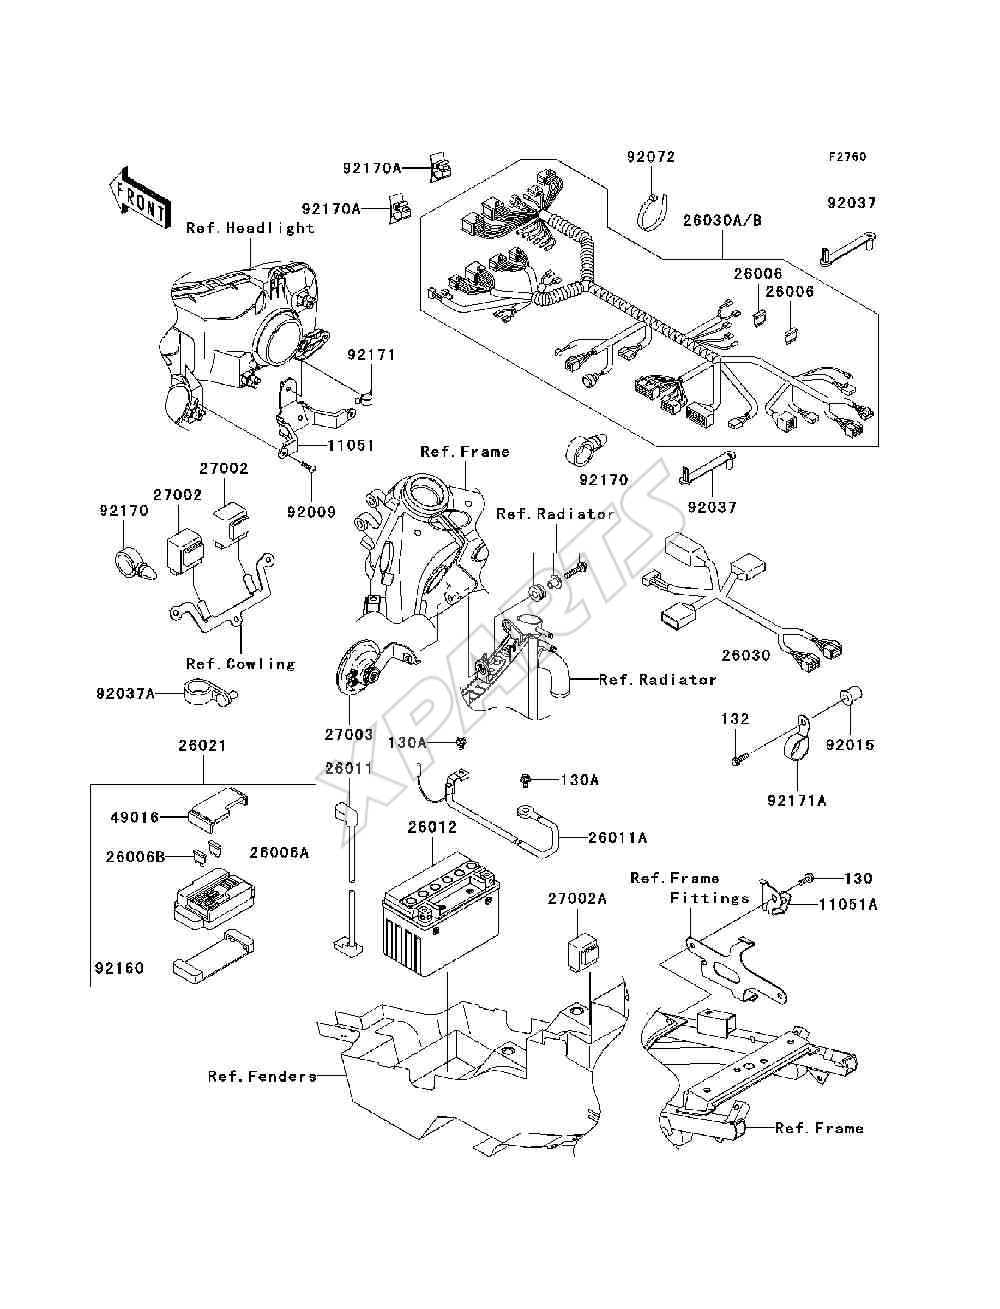 Bild für Kategorie Chassis Electrical Equipment